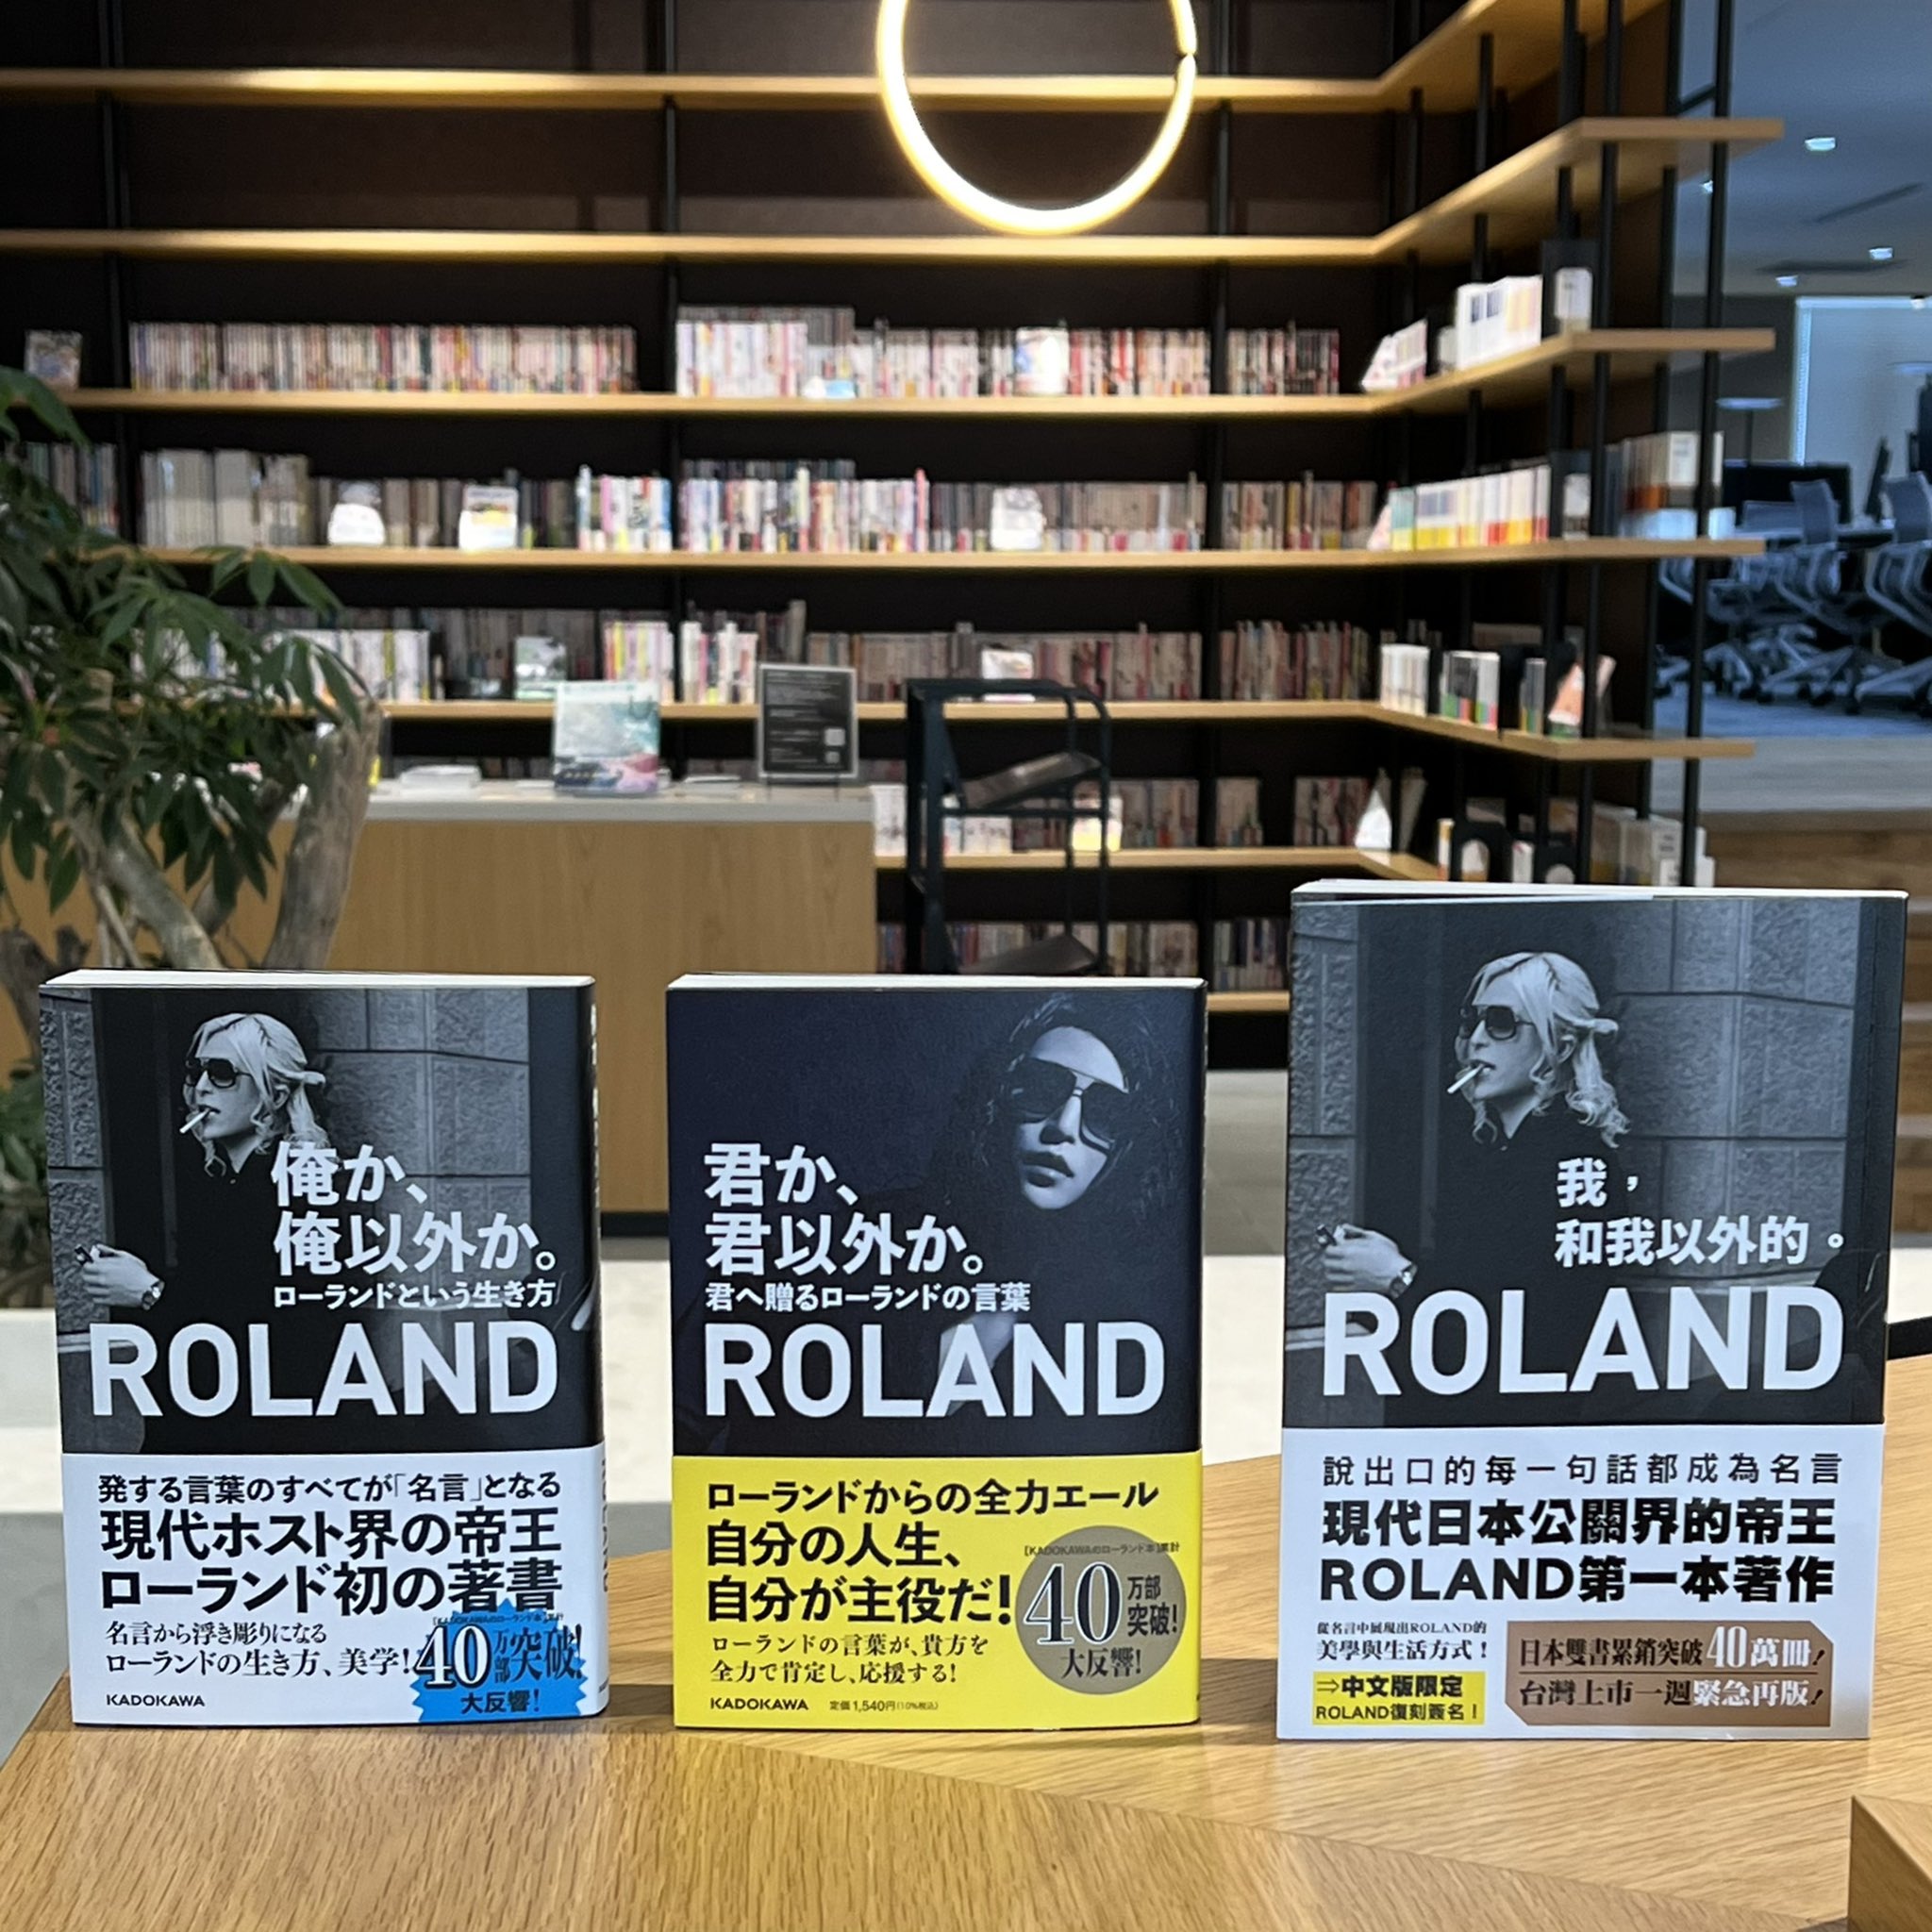 君か 君以外か 君へ贈るローランドの言葉 俺か 俺以外か ローランド という生き方 担当編集者 Booknews Roland Twitter